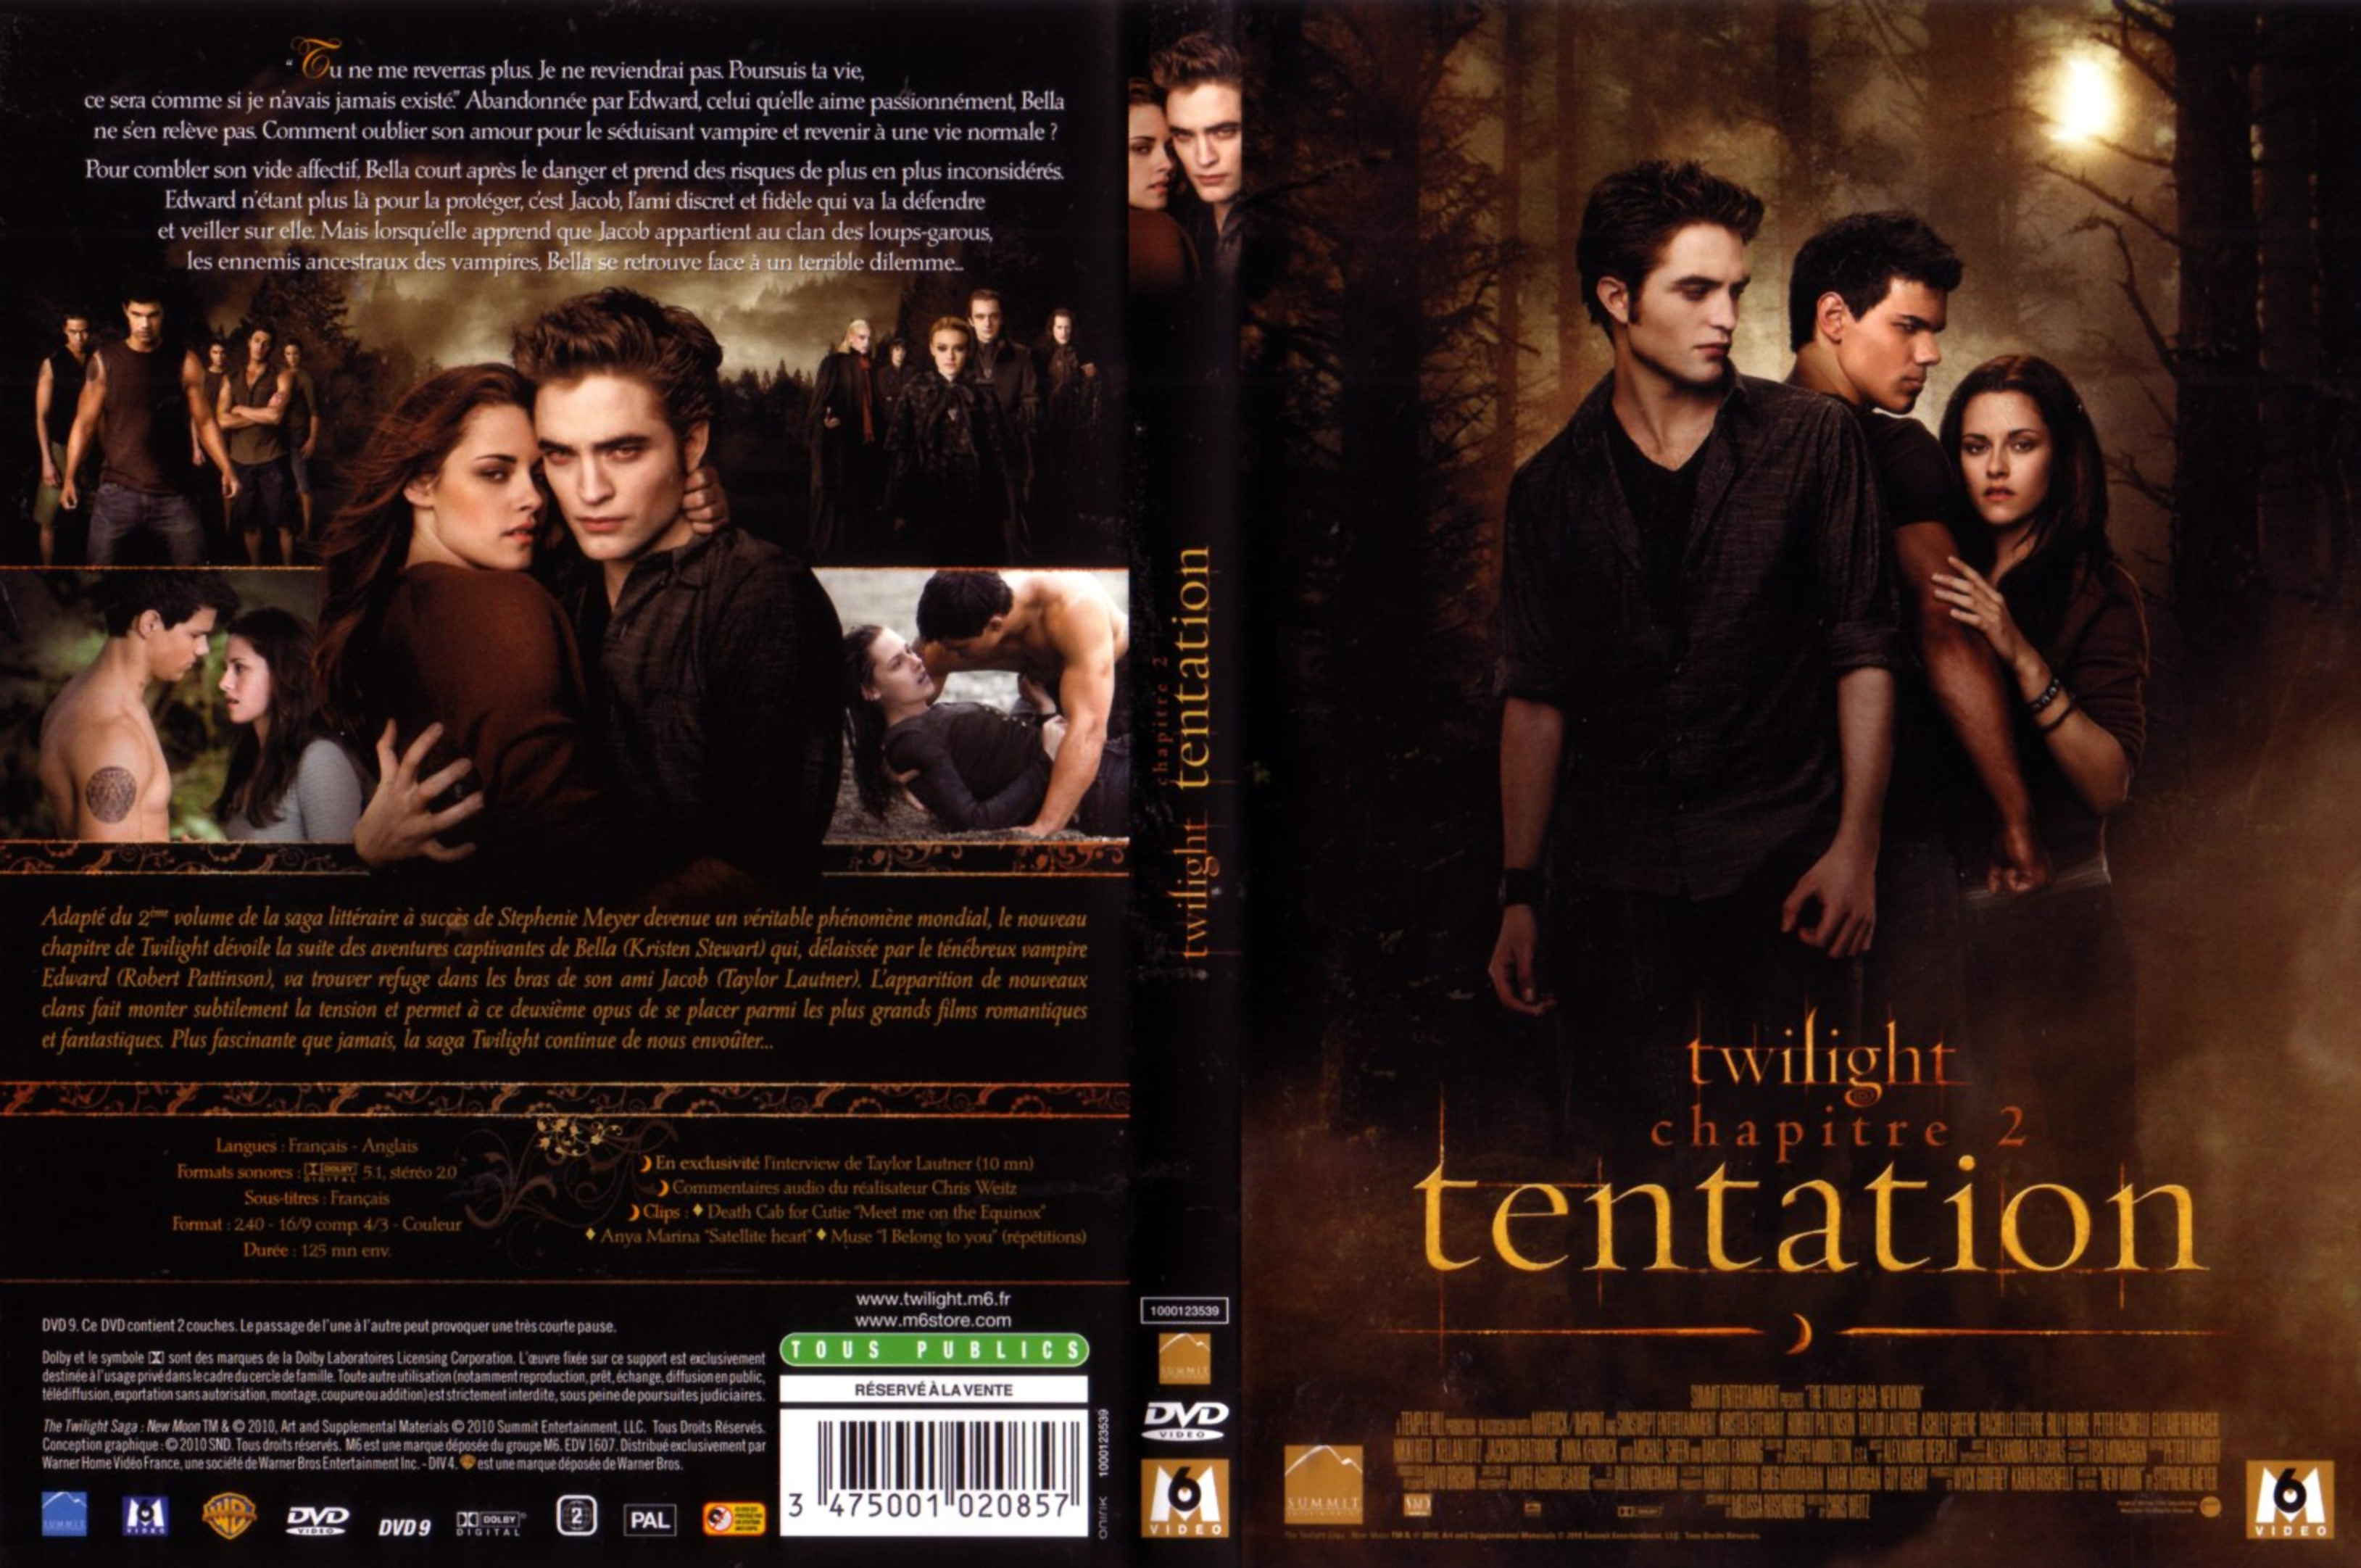 Jaquette DVD Twilight Chapitre 2 - Tentation